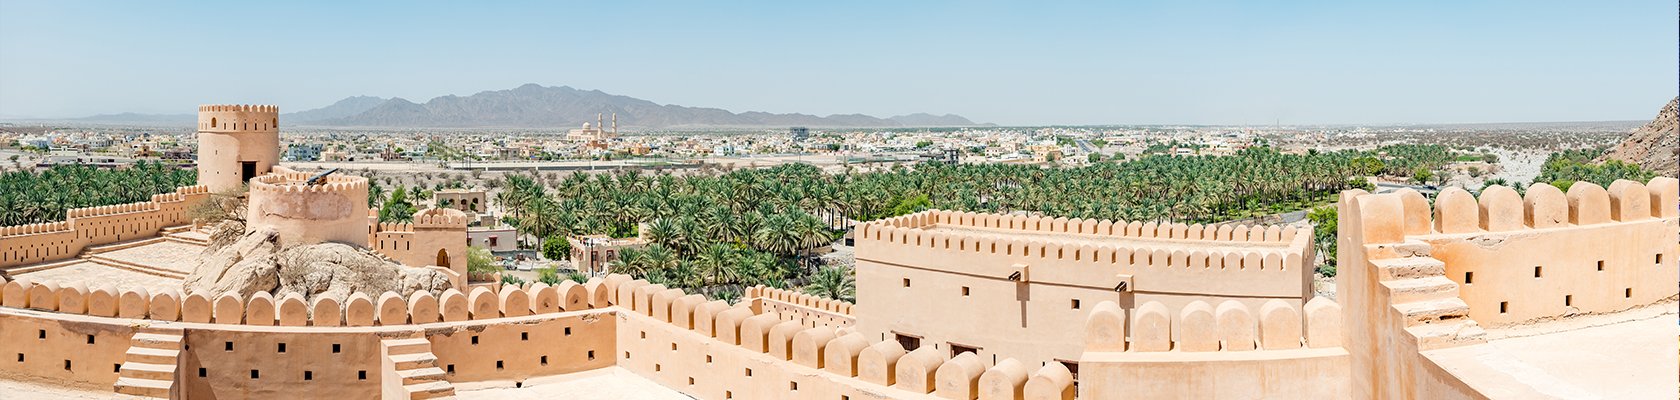 Rondreis Oman